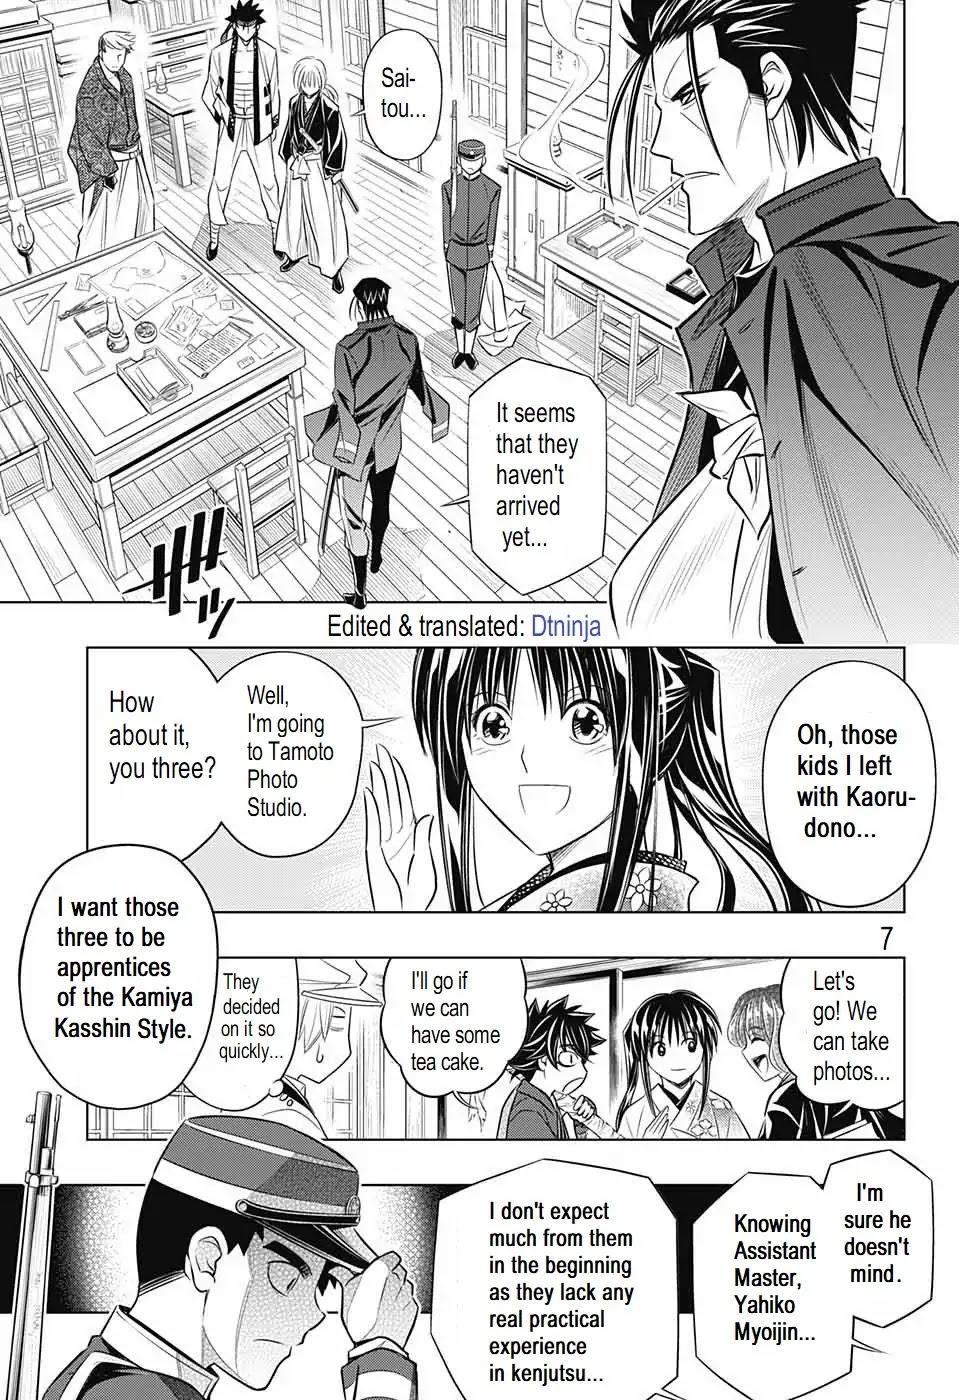 Rurouni Kenshin Manga To Resume